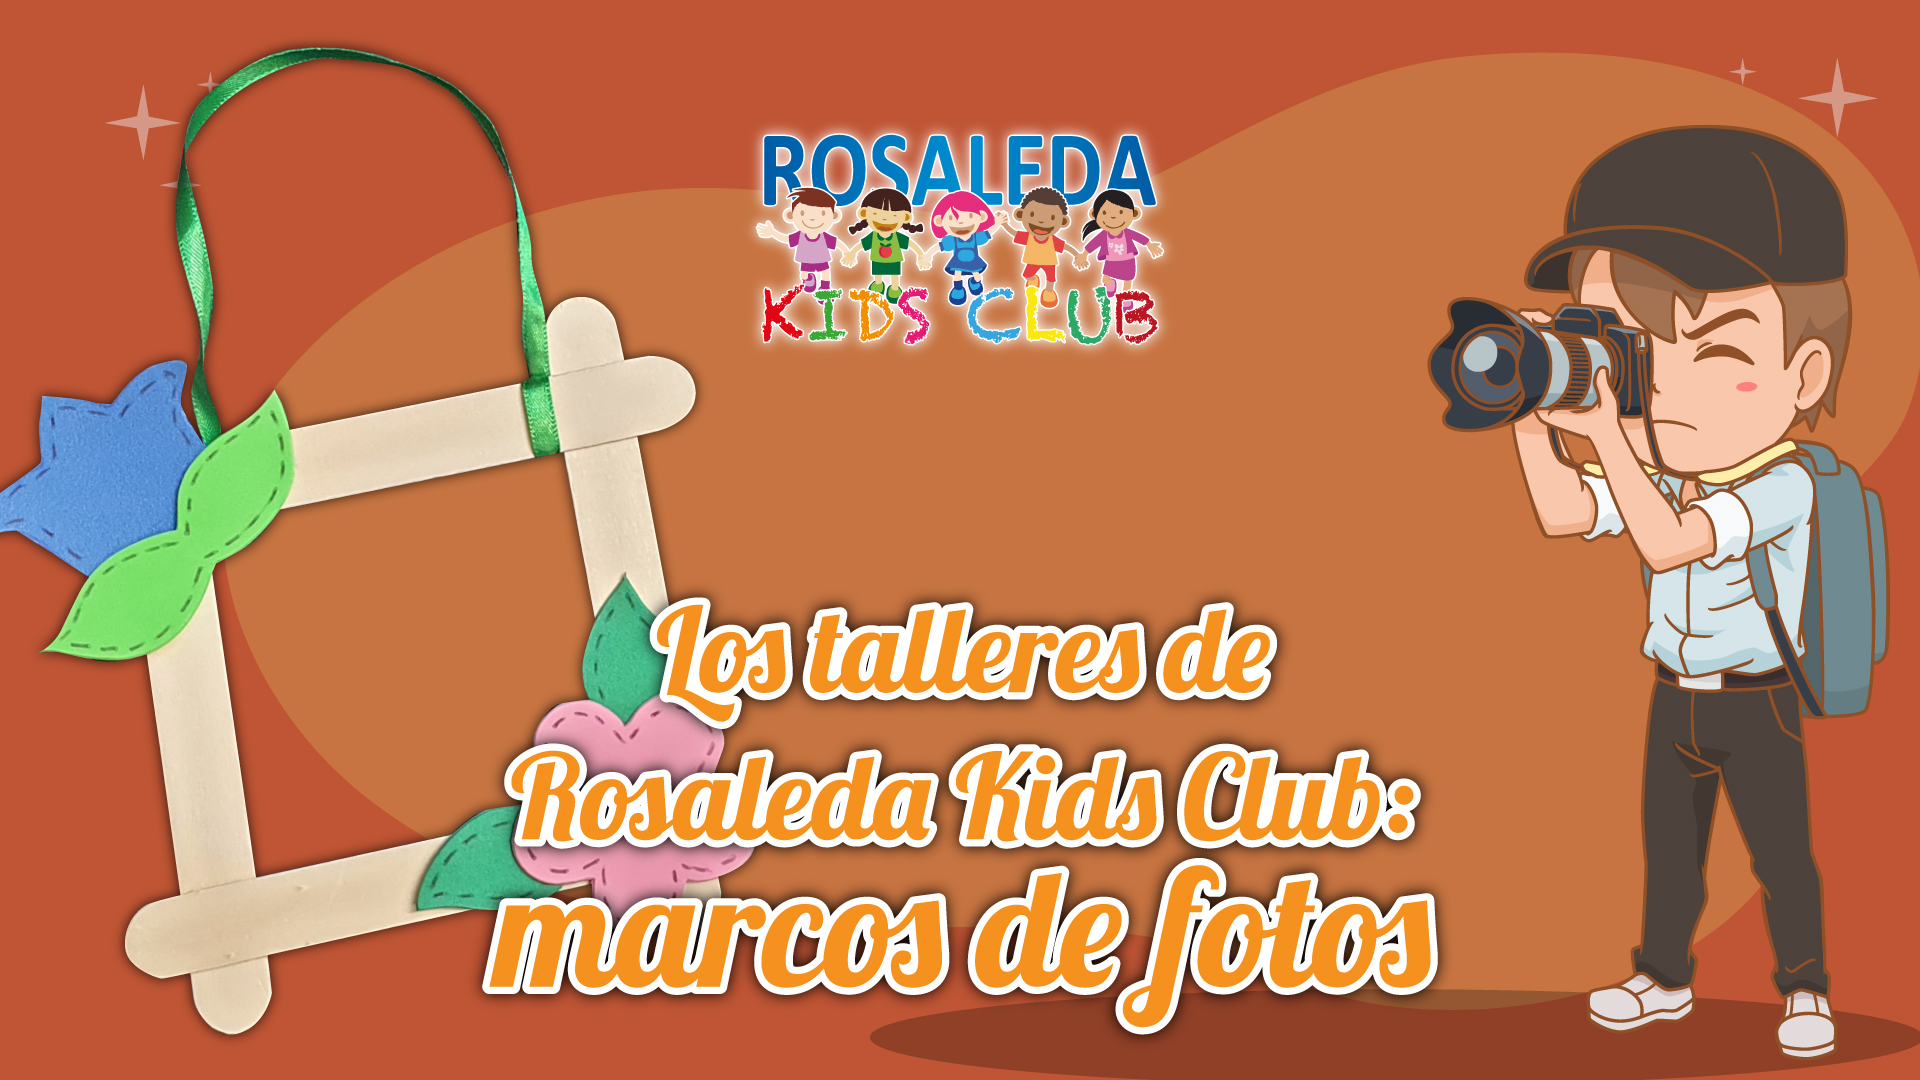 Los talleres de Rosaleda Kids Club: marcos de fotos